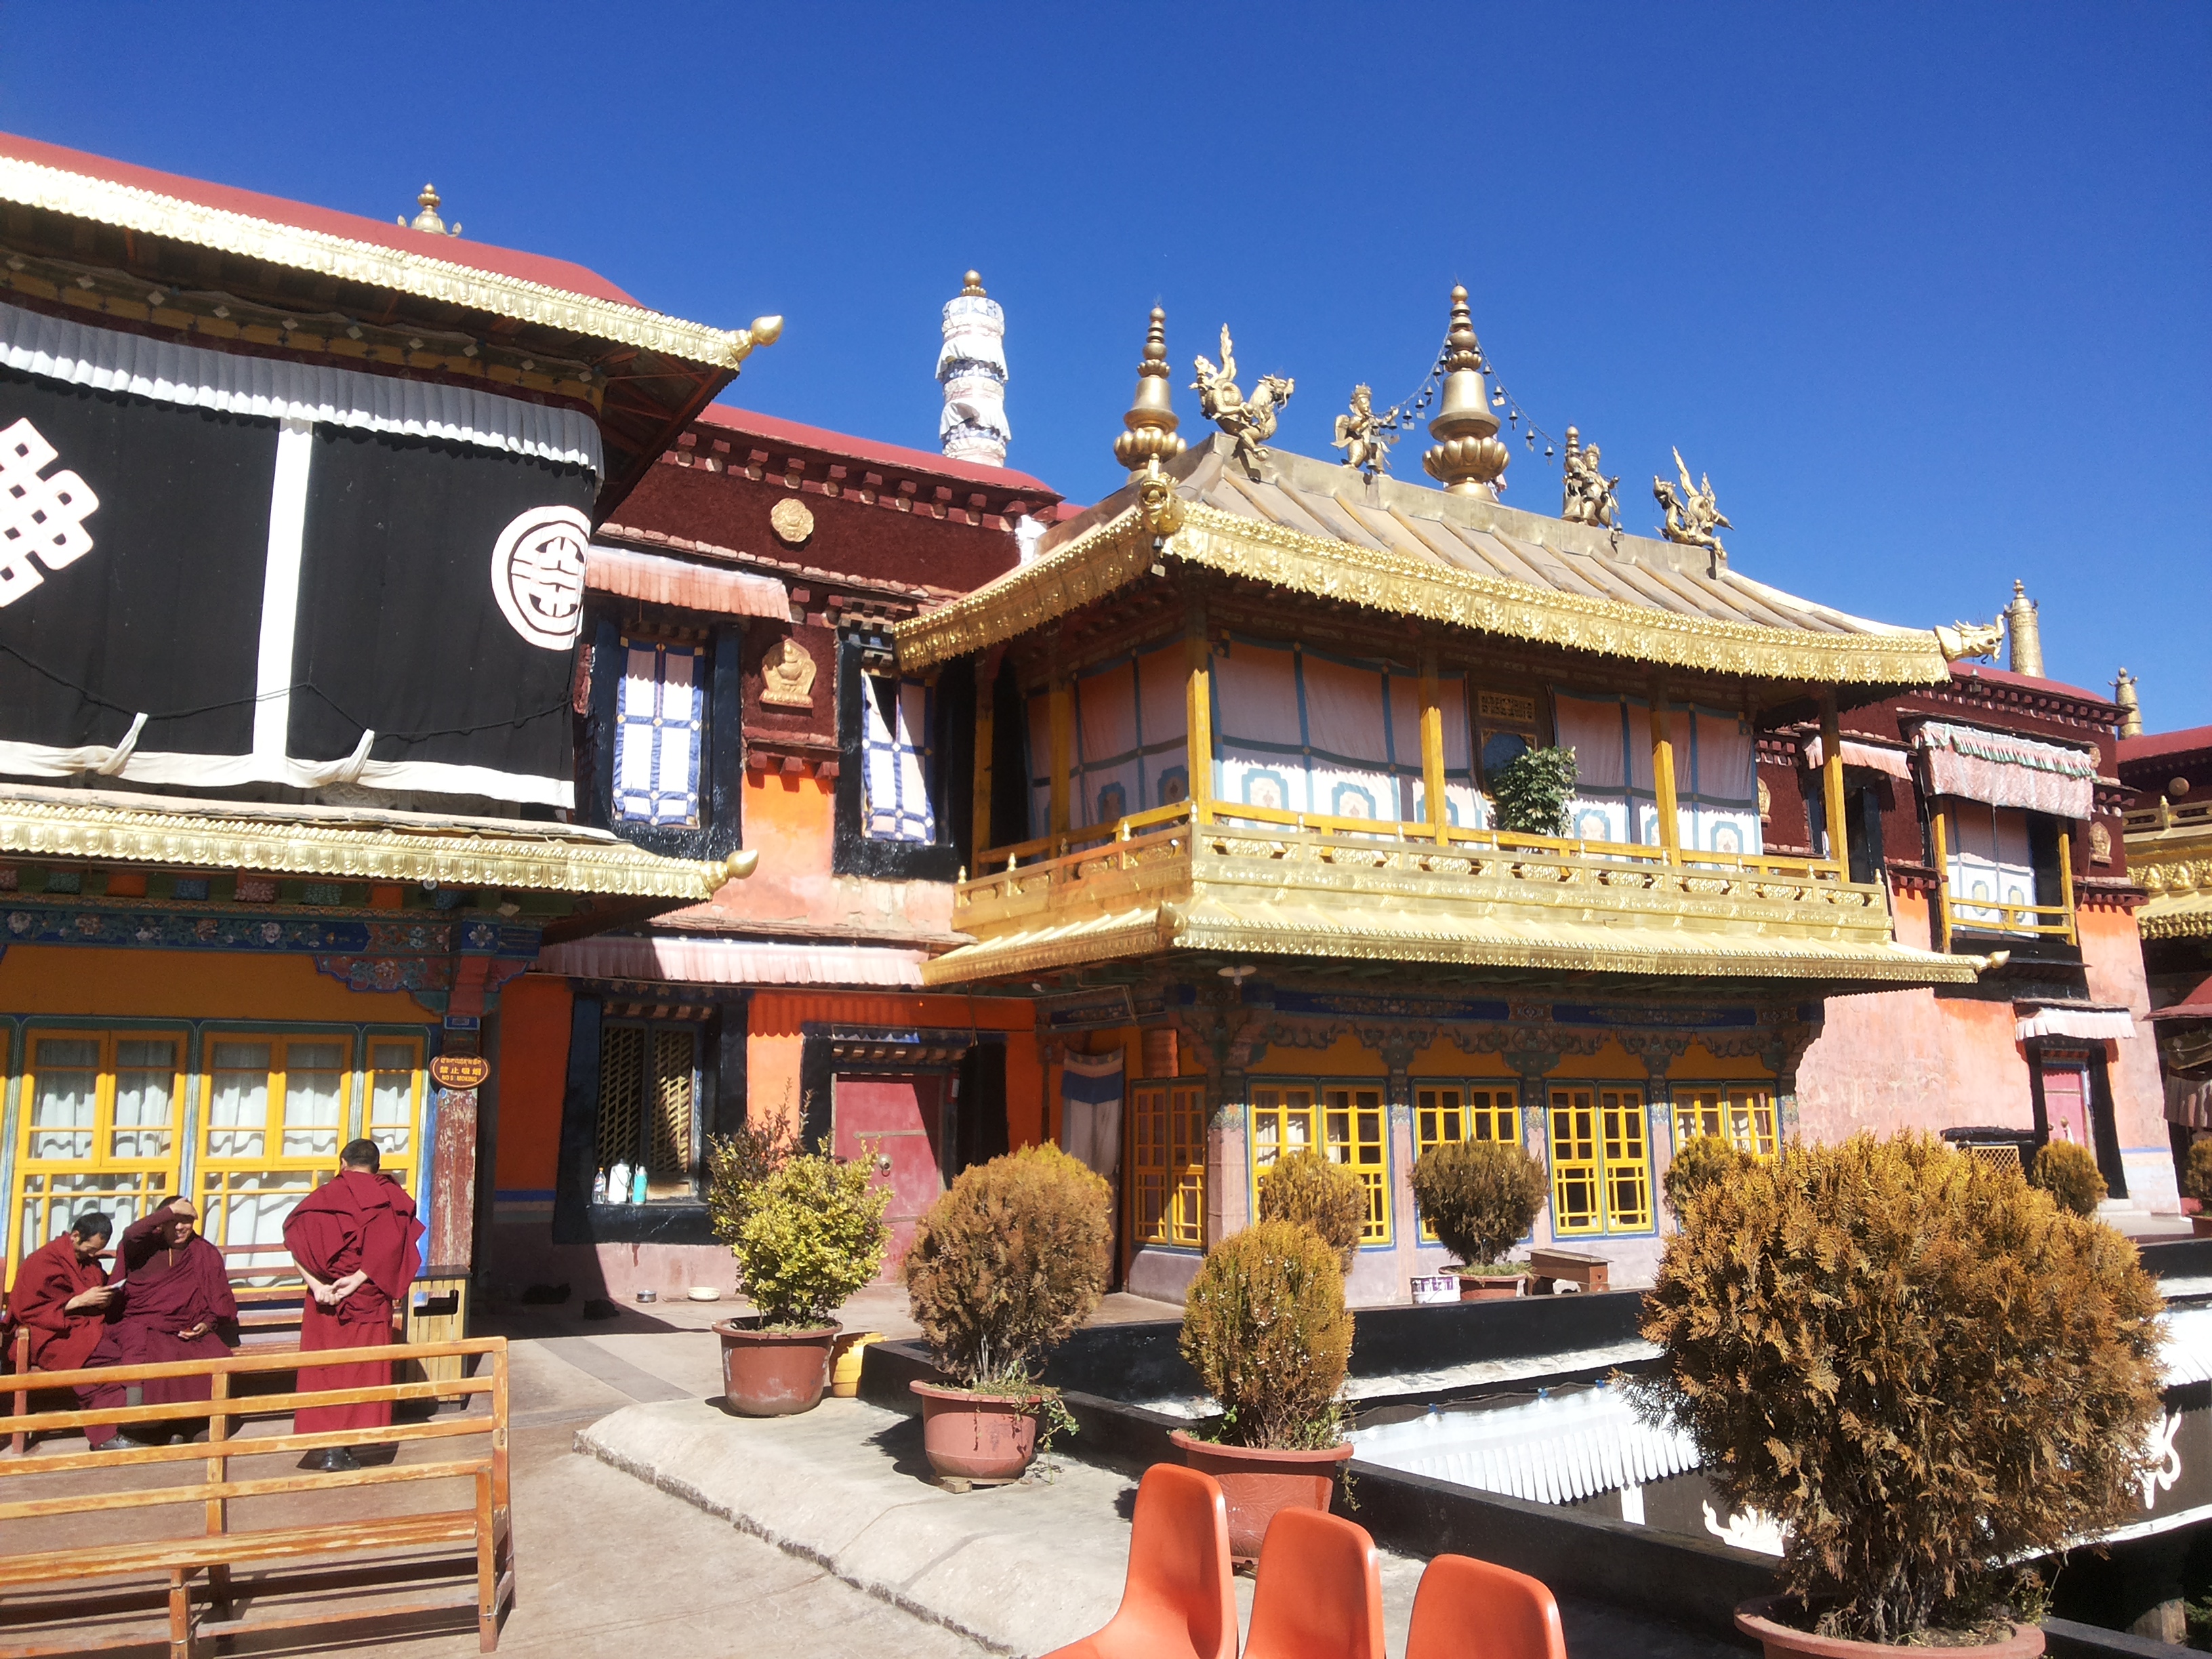 Resultado de imagem para tibet nepal